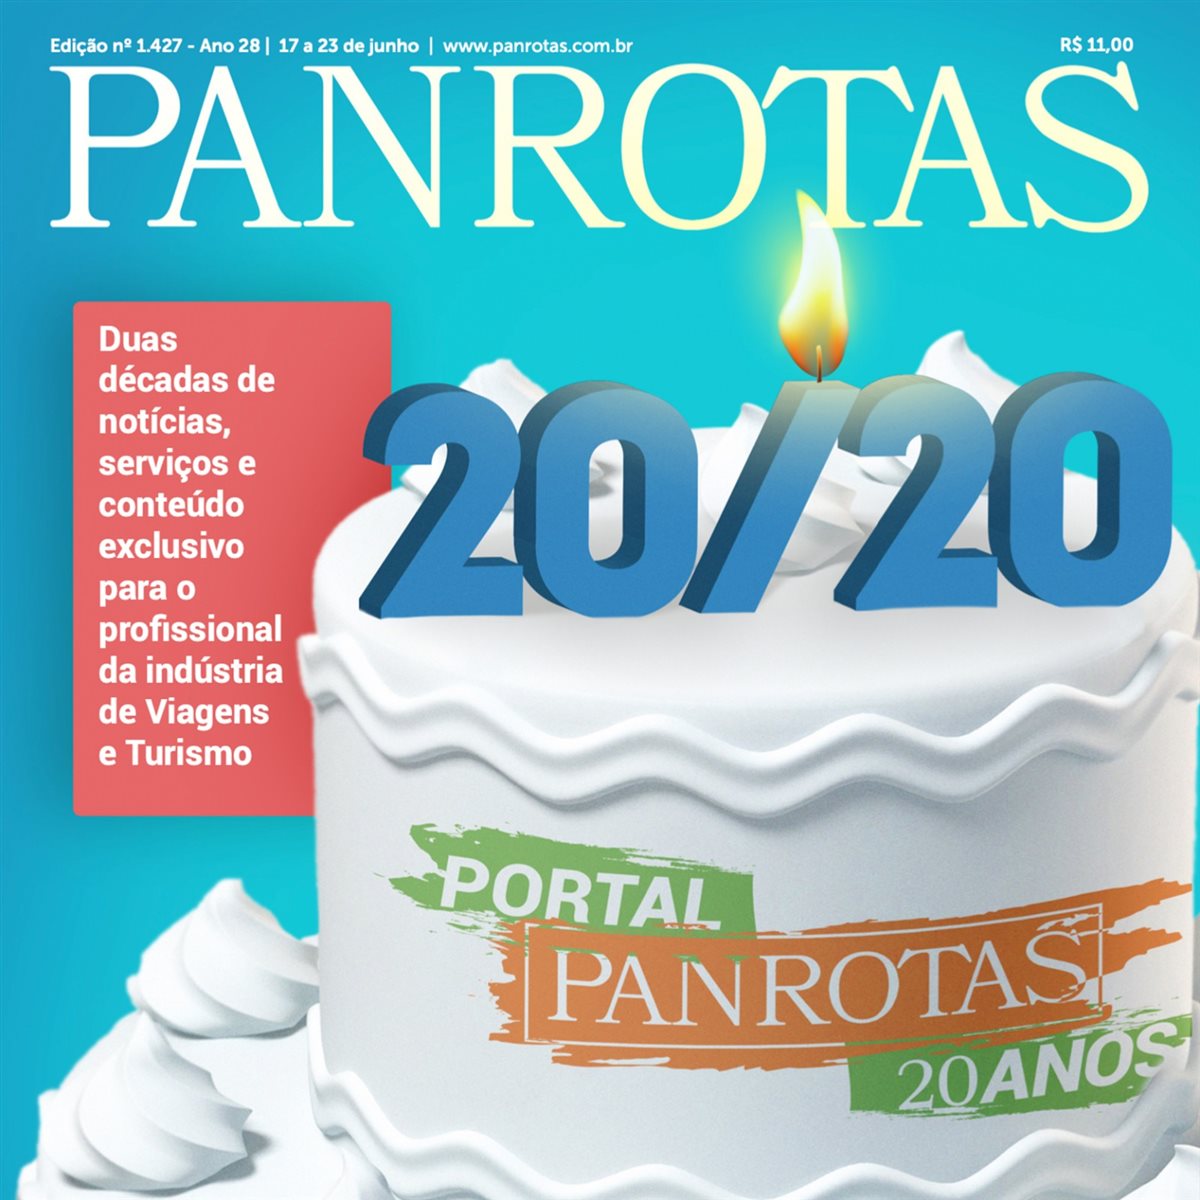 Capa da Revista PANROTAS 1.427 é celebrativa aos 20 anos do Portal PANROTAS